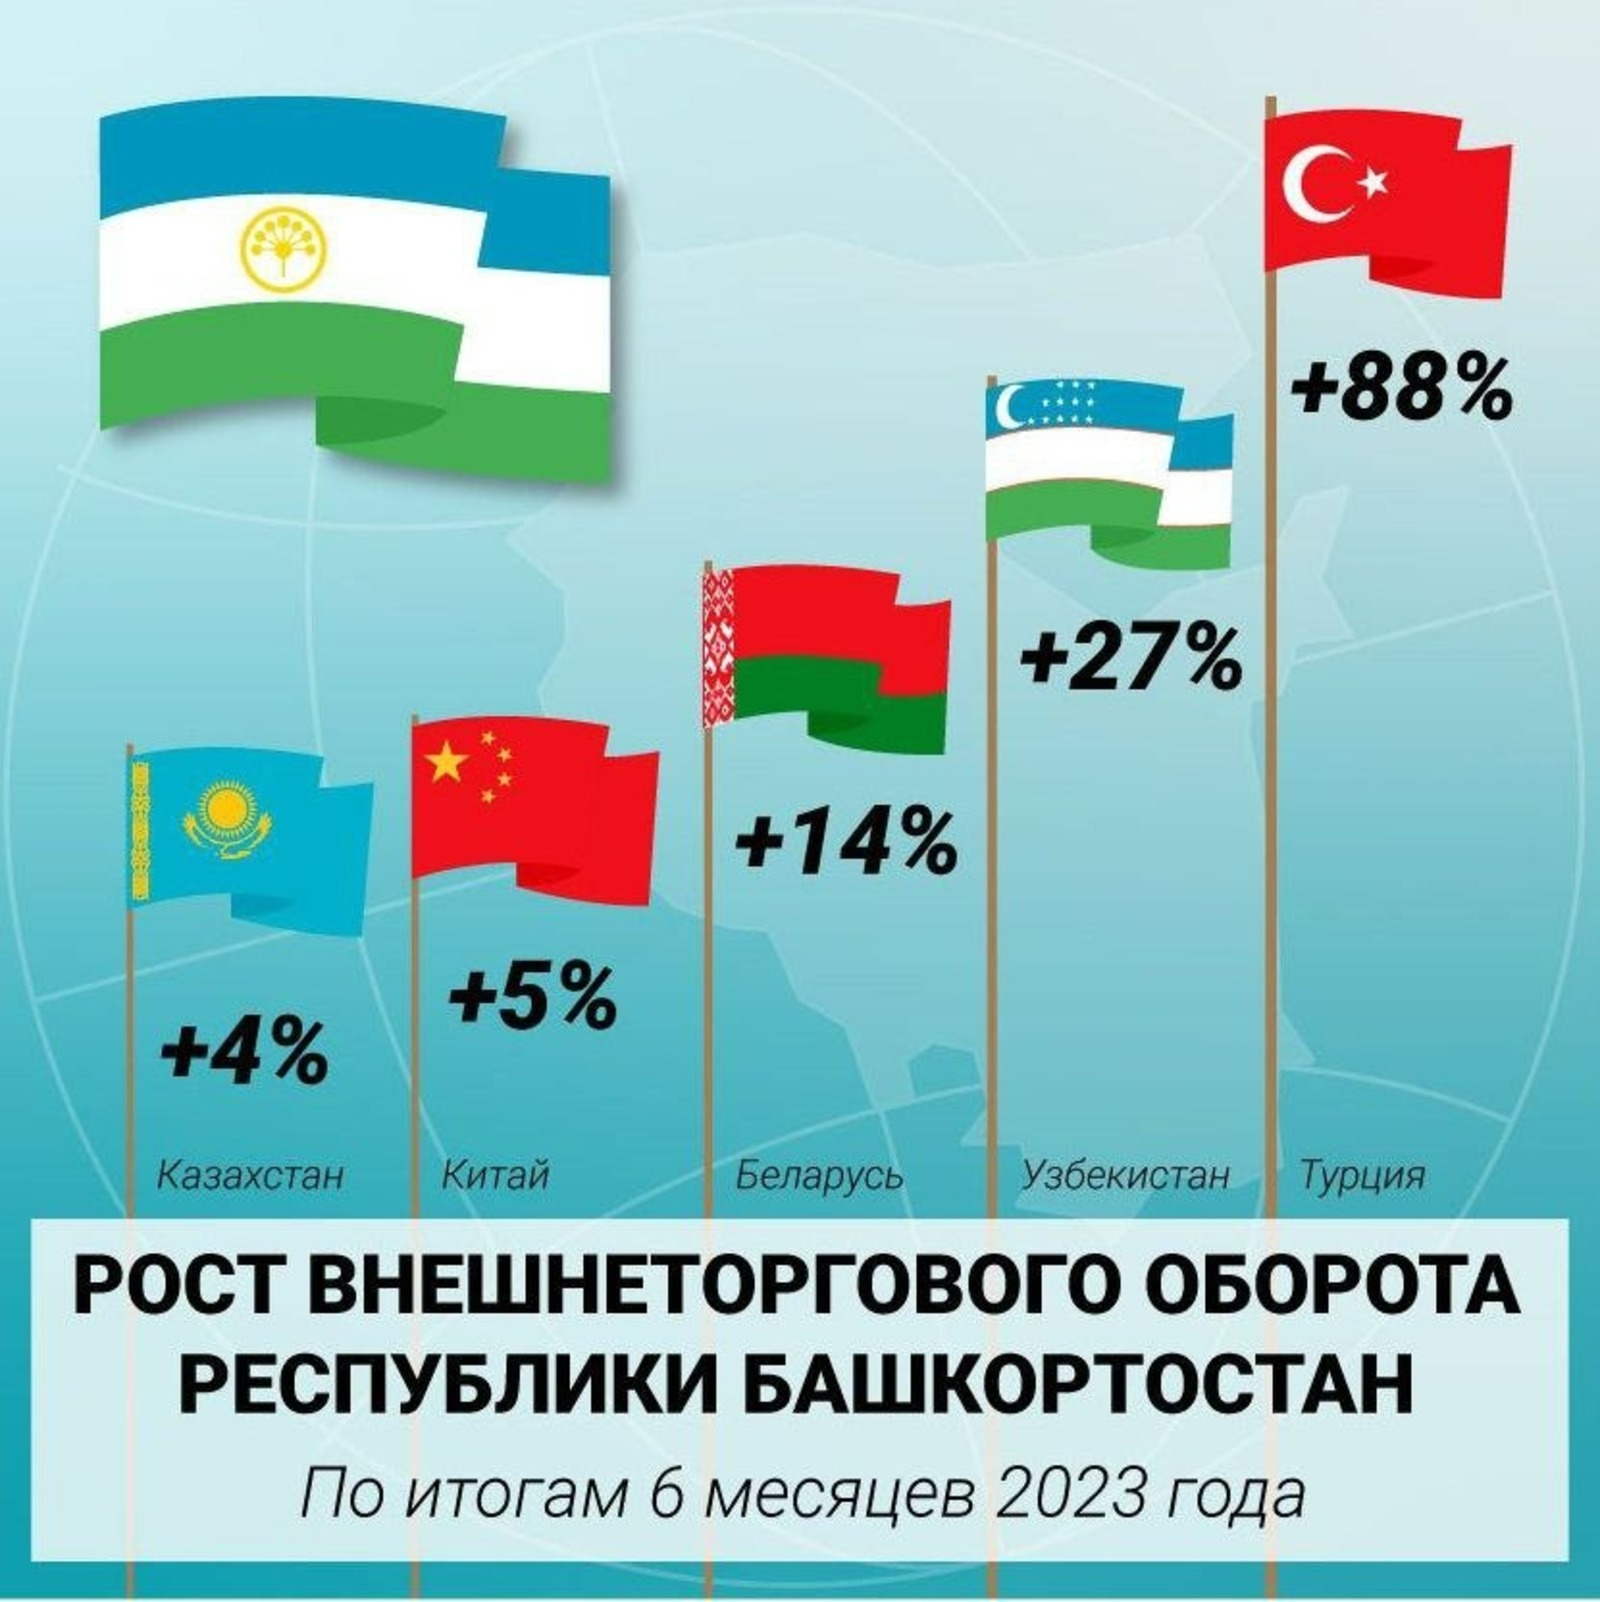 Башкортостан увеличил внешнеторговый оборот с Турцией на 88%